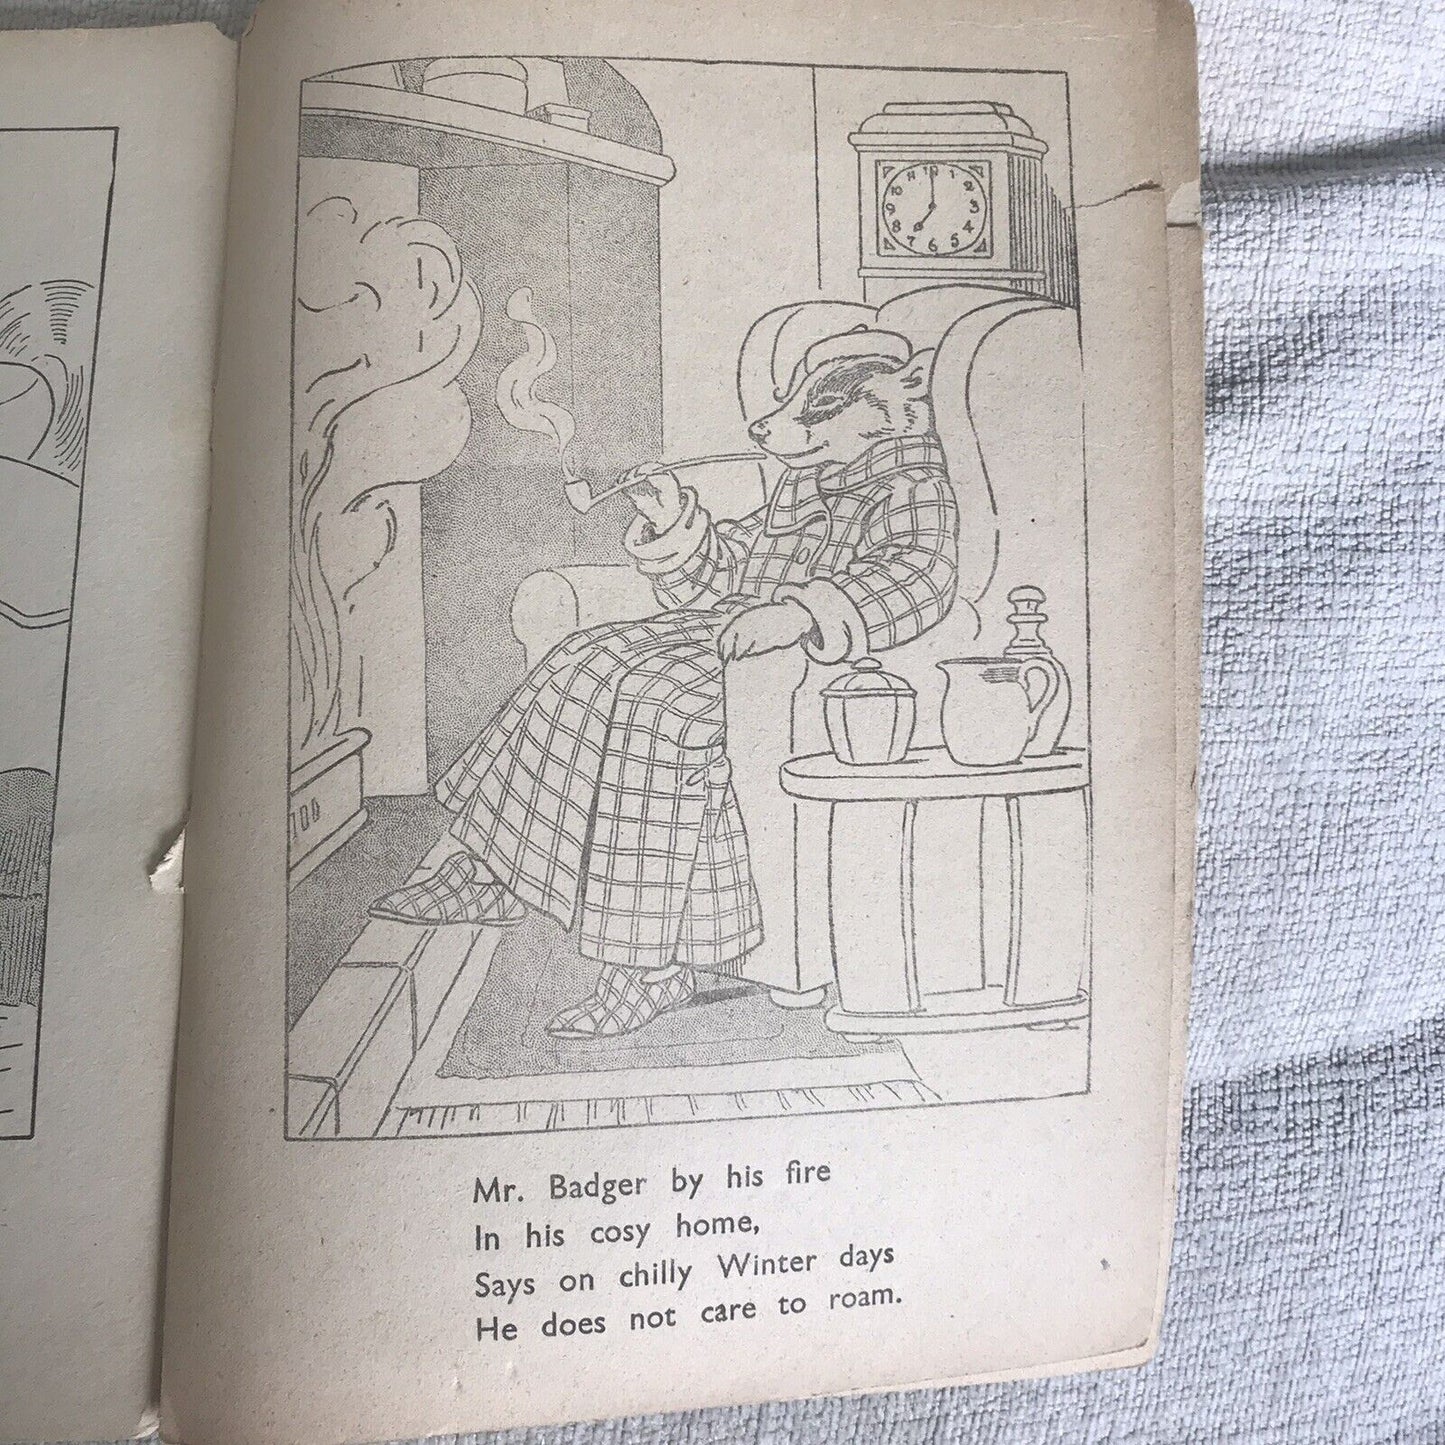 1935 Chums (Agnes Richardson Illust) Birn Brothers Publish Honeyburn Books (UK)